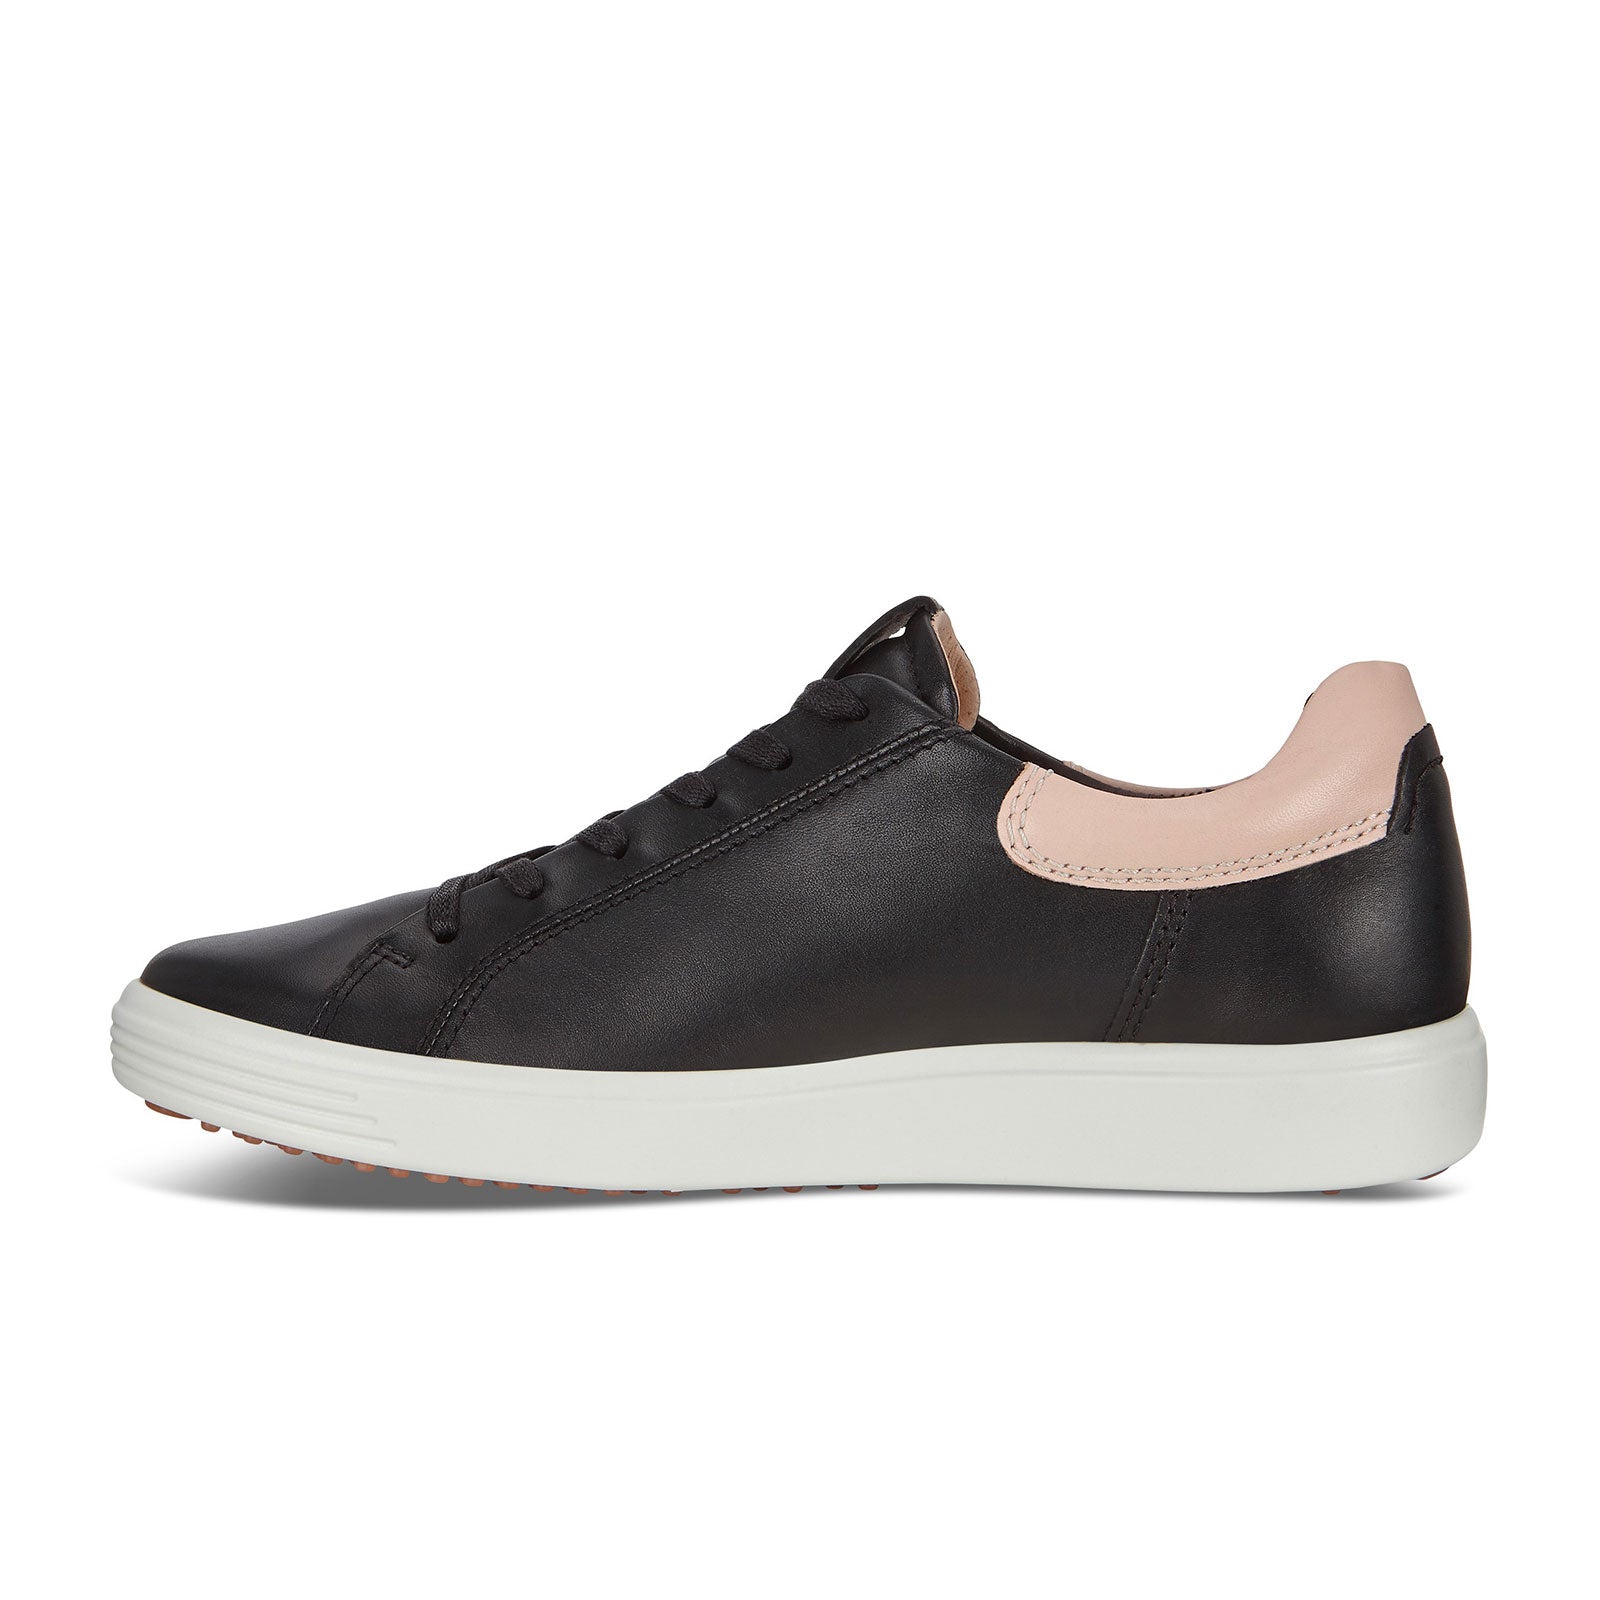 Soft 7 Street Sneaker (Women) - Black/Rose Dust - The Heel Shoe Fitters